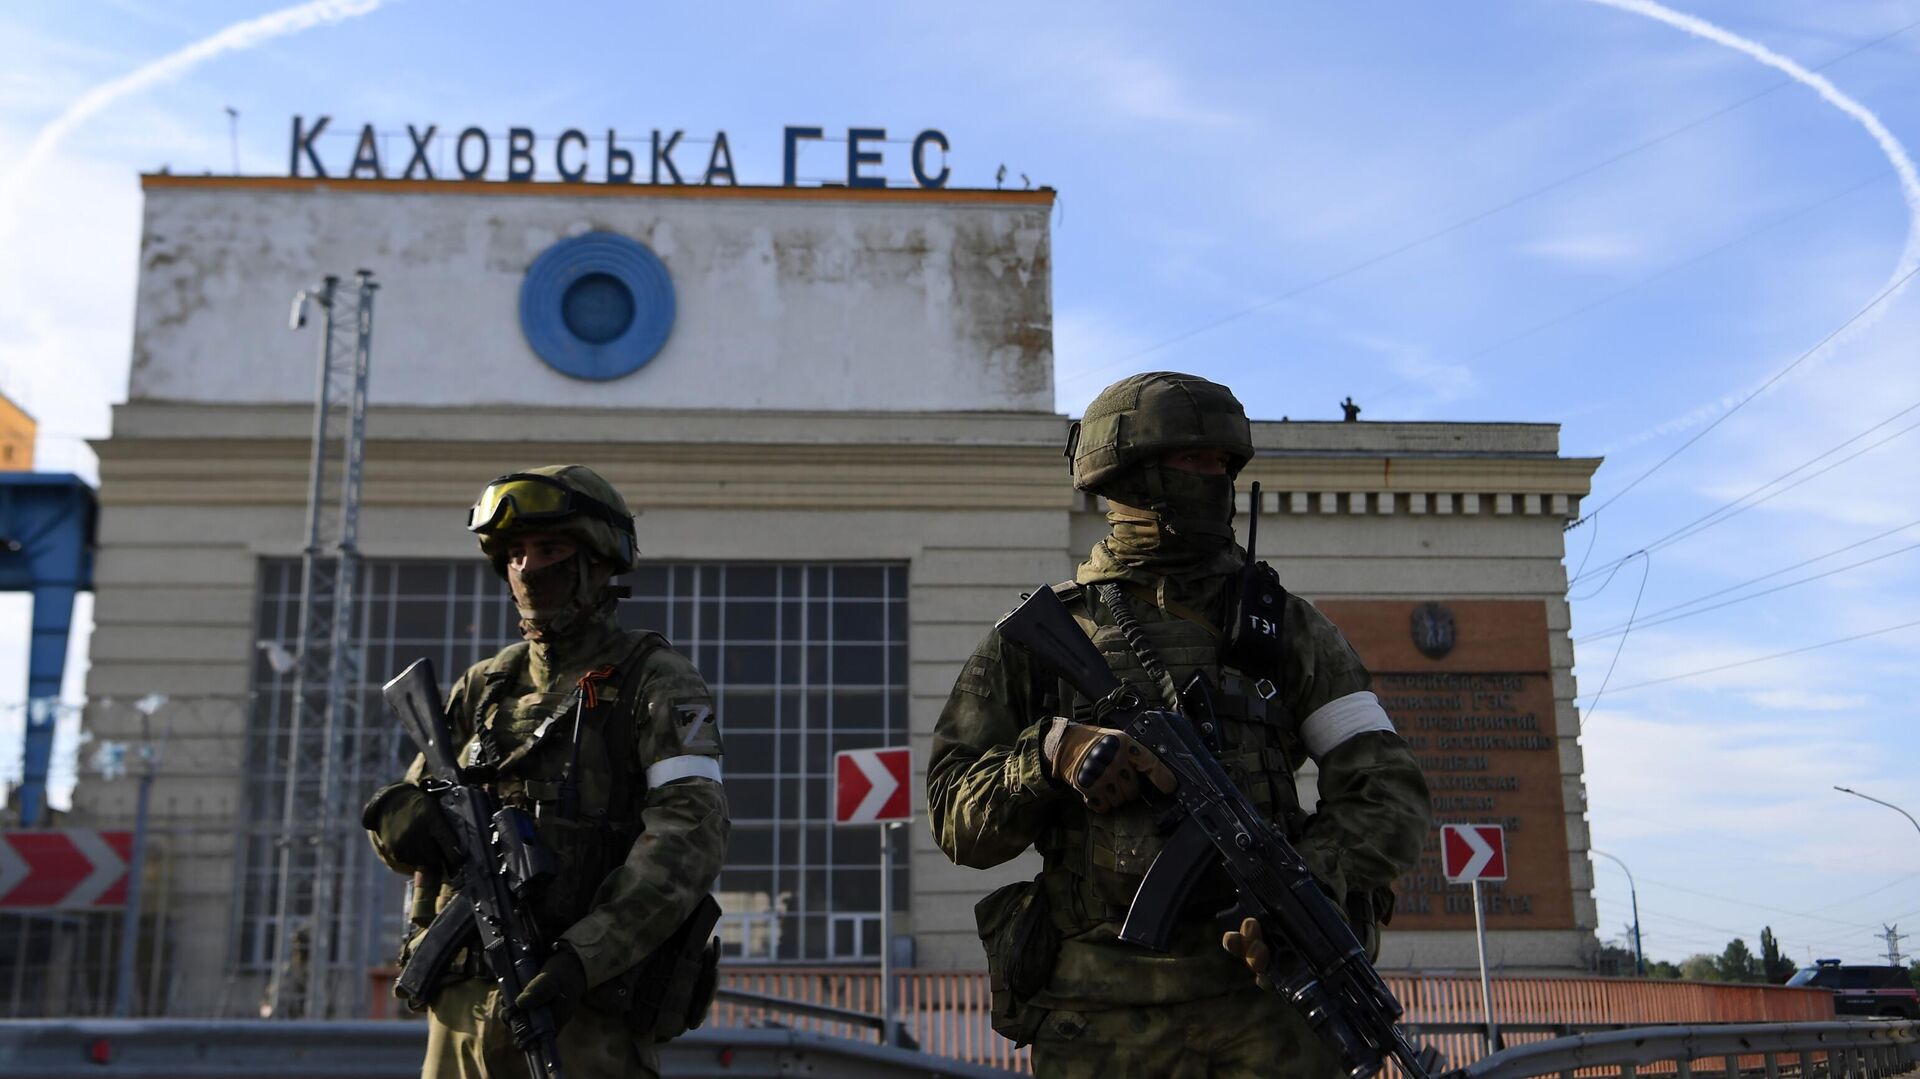 Военнослужащие РФ возле здания Каховской ГЭС - РИА Новости, 1920, 08.07.2022